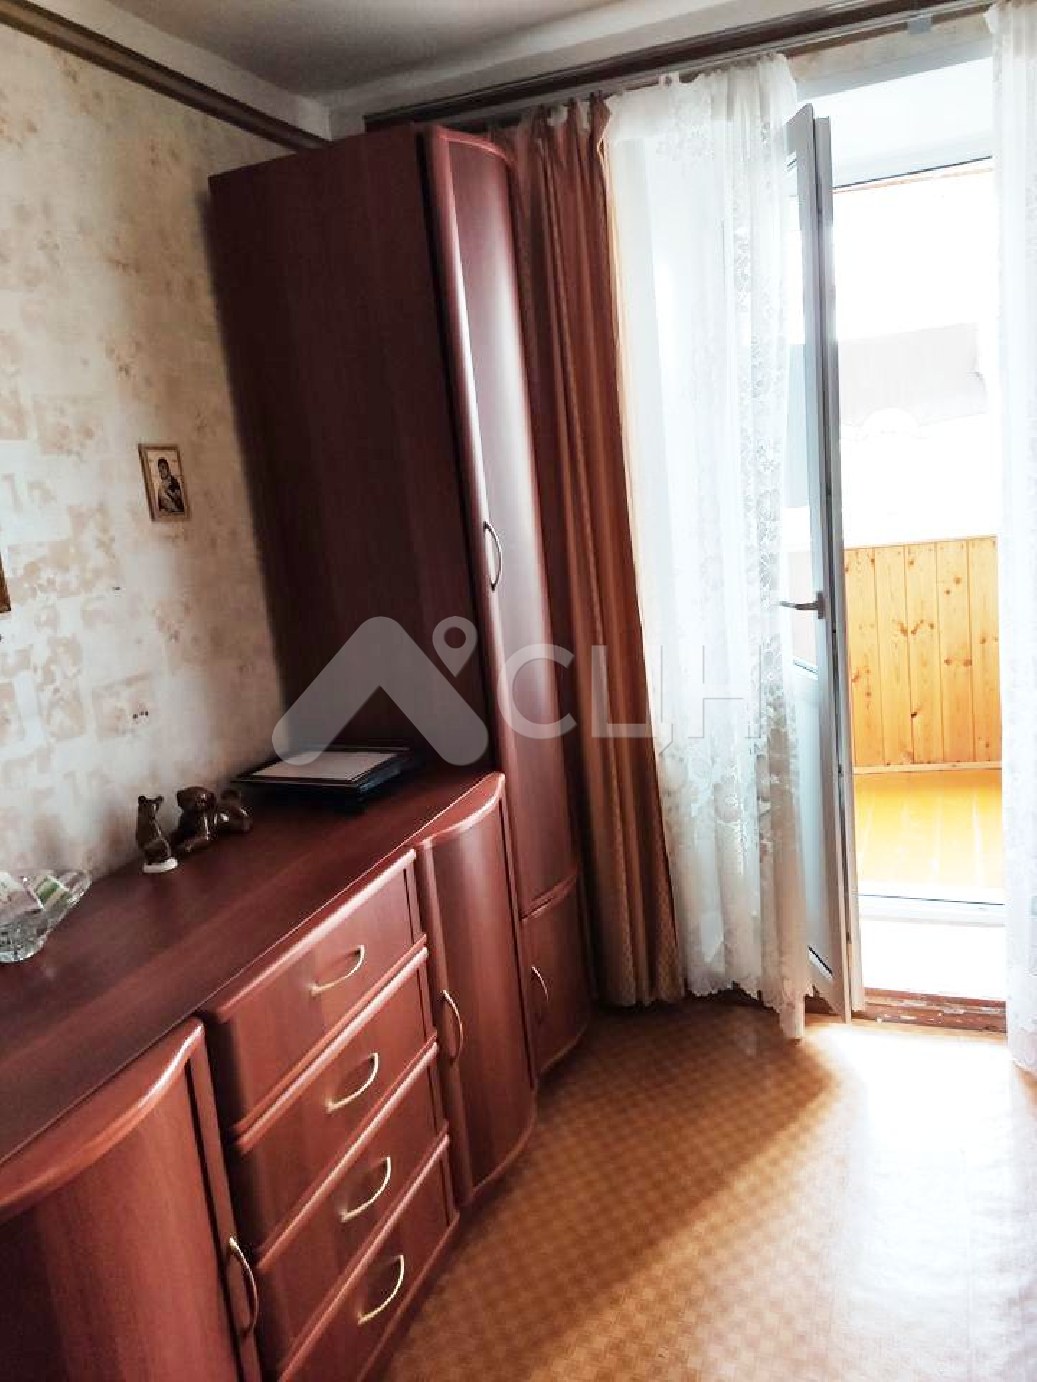 продать квартиру саров
: Г. Саров, улица Некрасова, 11, 3-комн квартира, этаж 2 из 9, продажа.